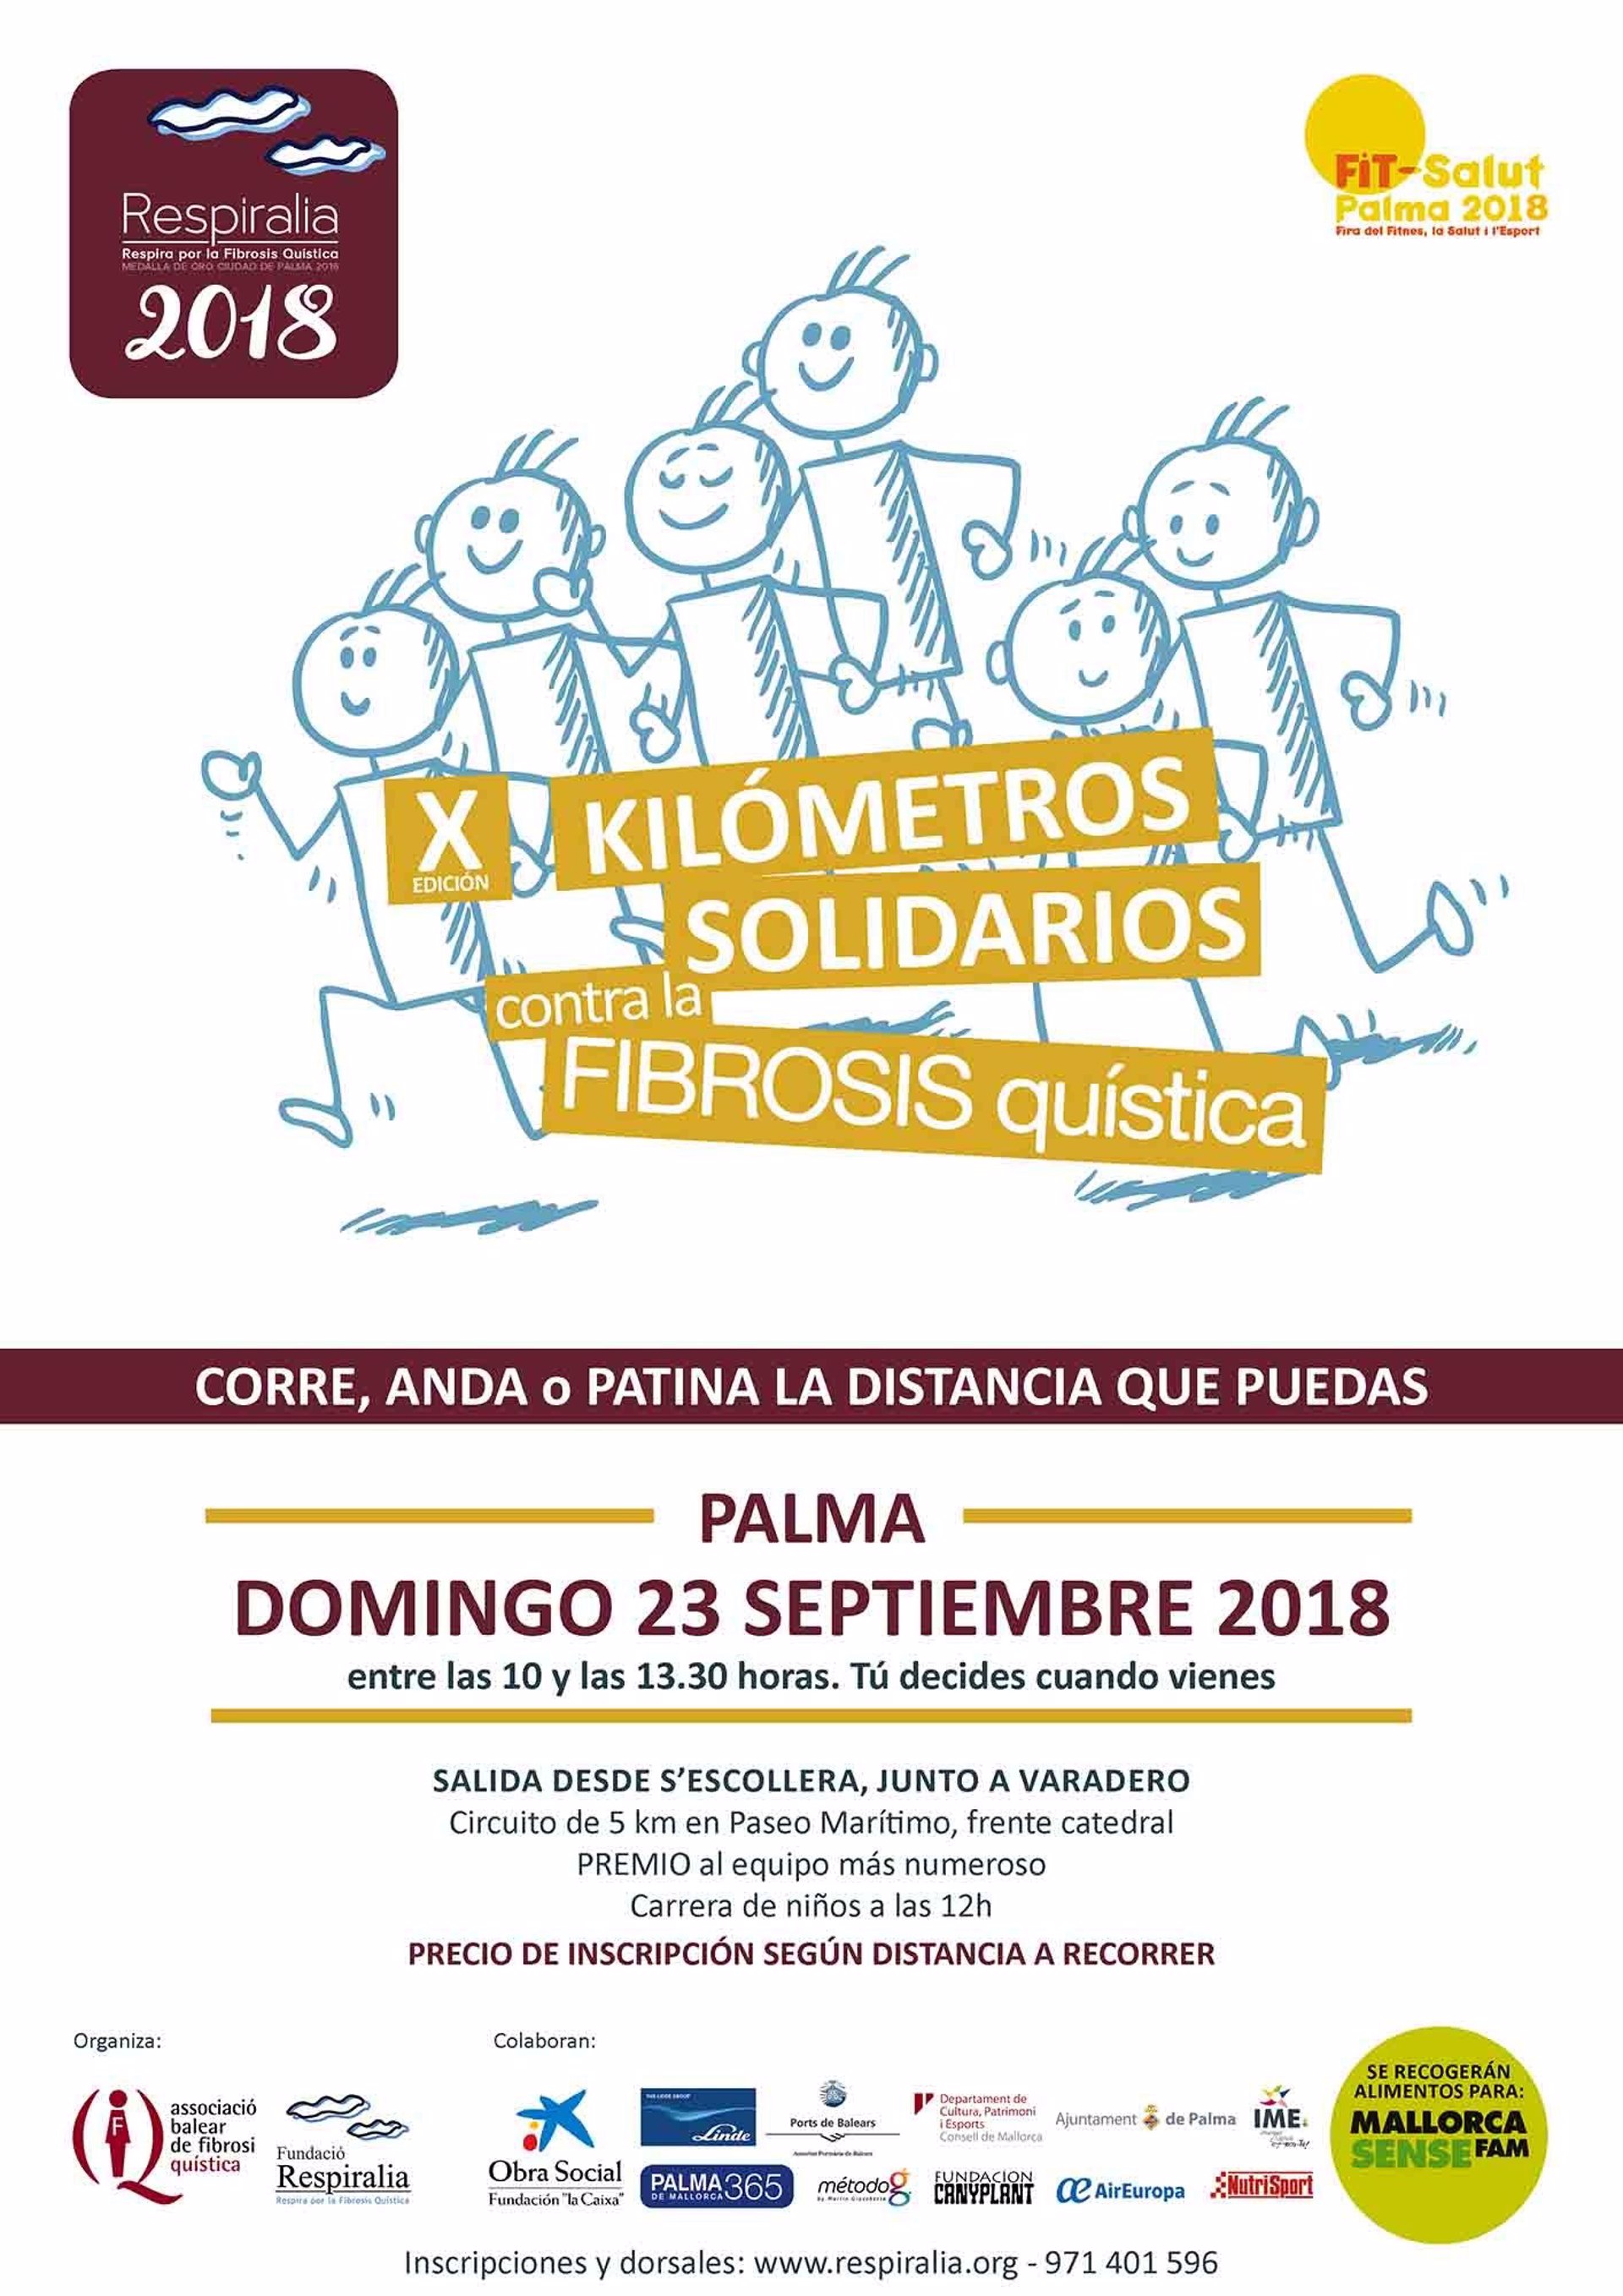 Palma acogerá en septiembre una carrera solidaria contra la fibrosis quística